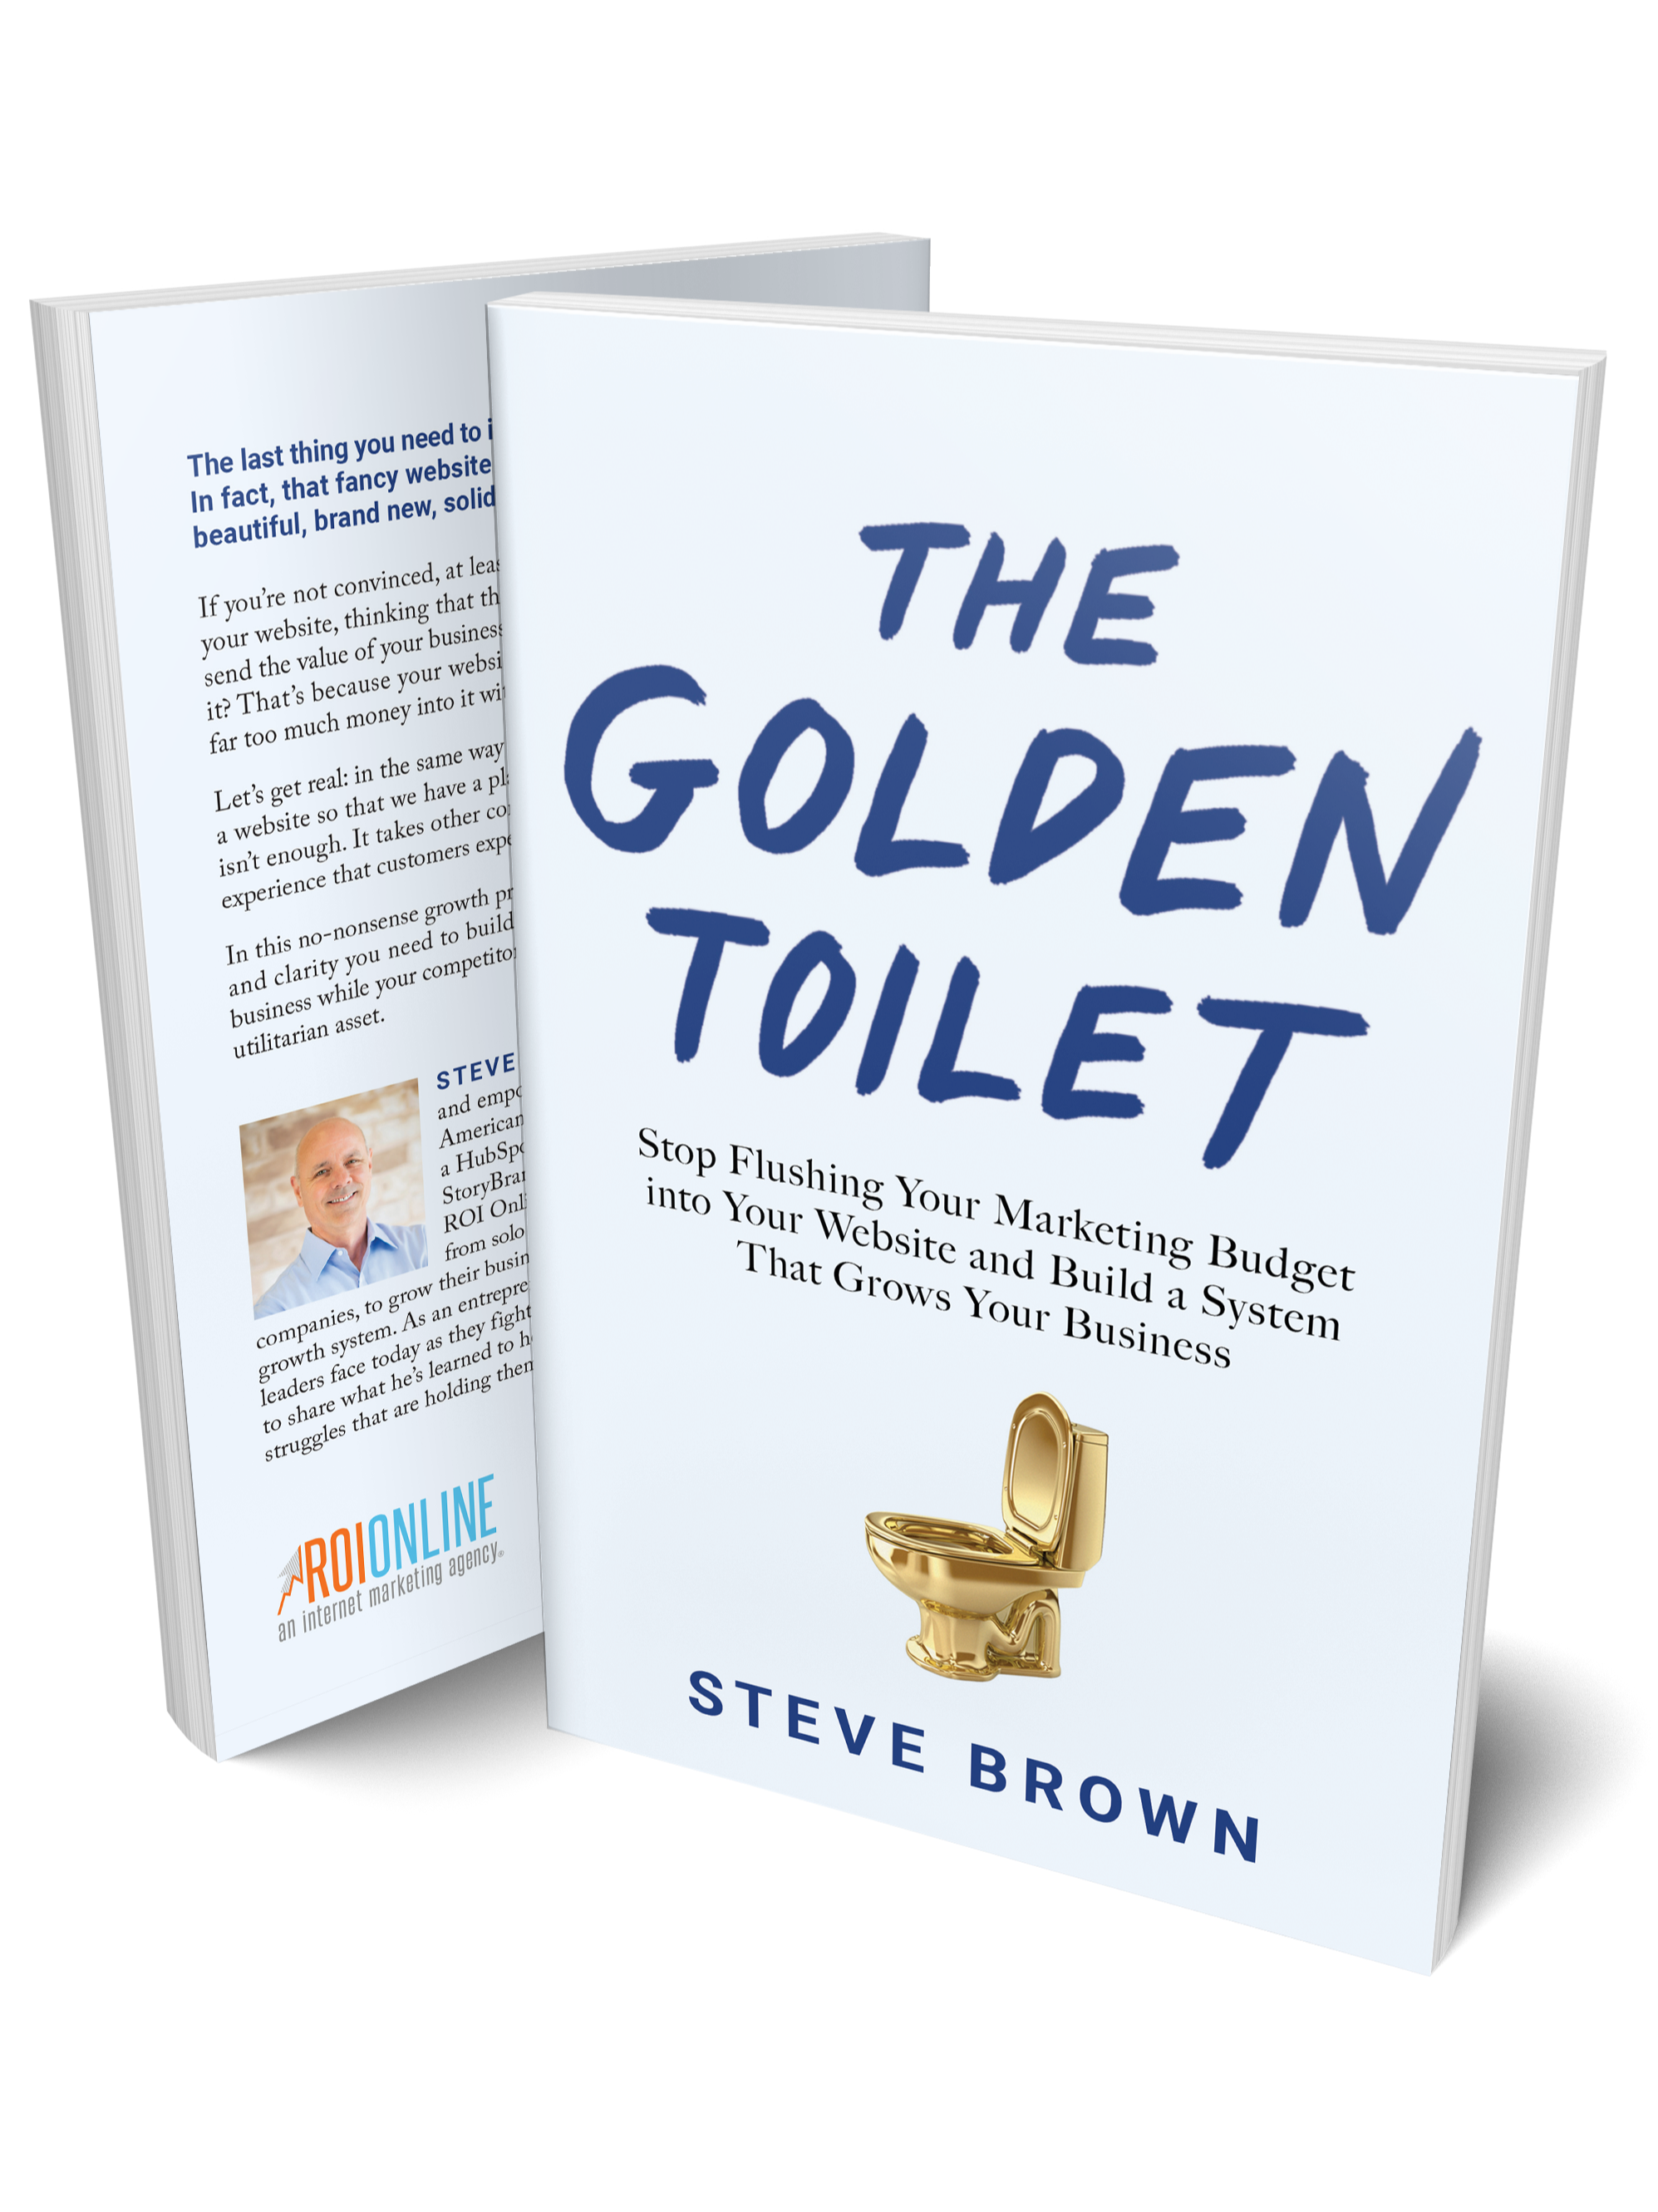 Golden Toilet Standing Paperback Clone